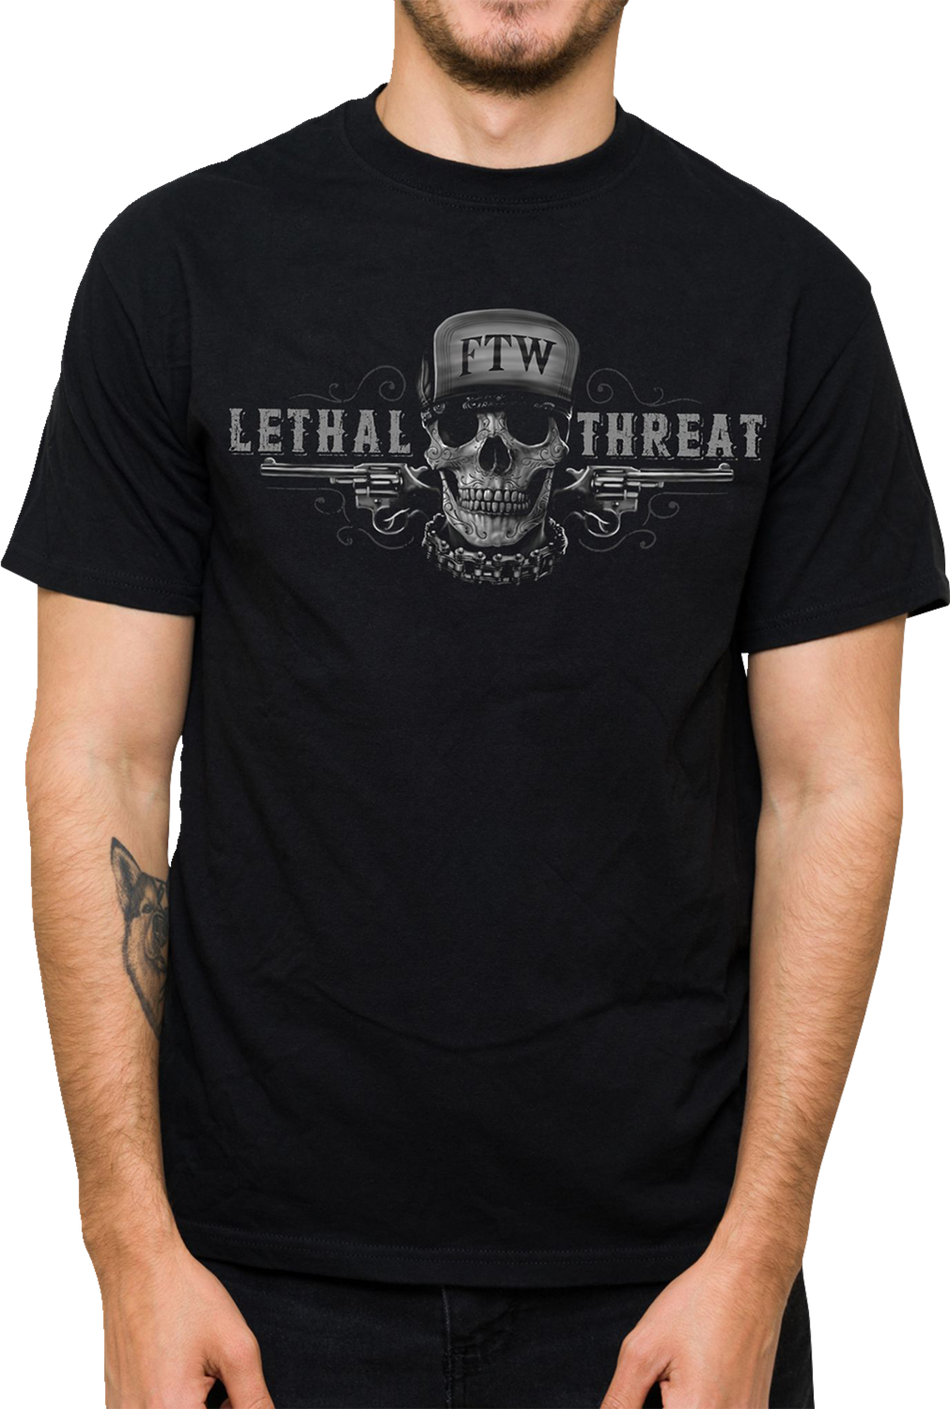 LETHAL THREAT Friend or Foe T-Shirt - Black - 4XL LT20904-4XL